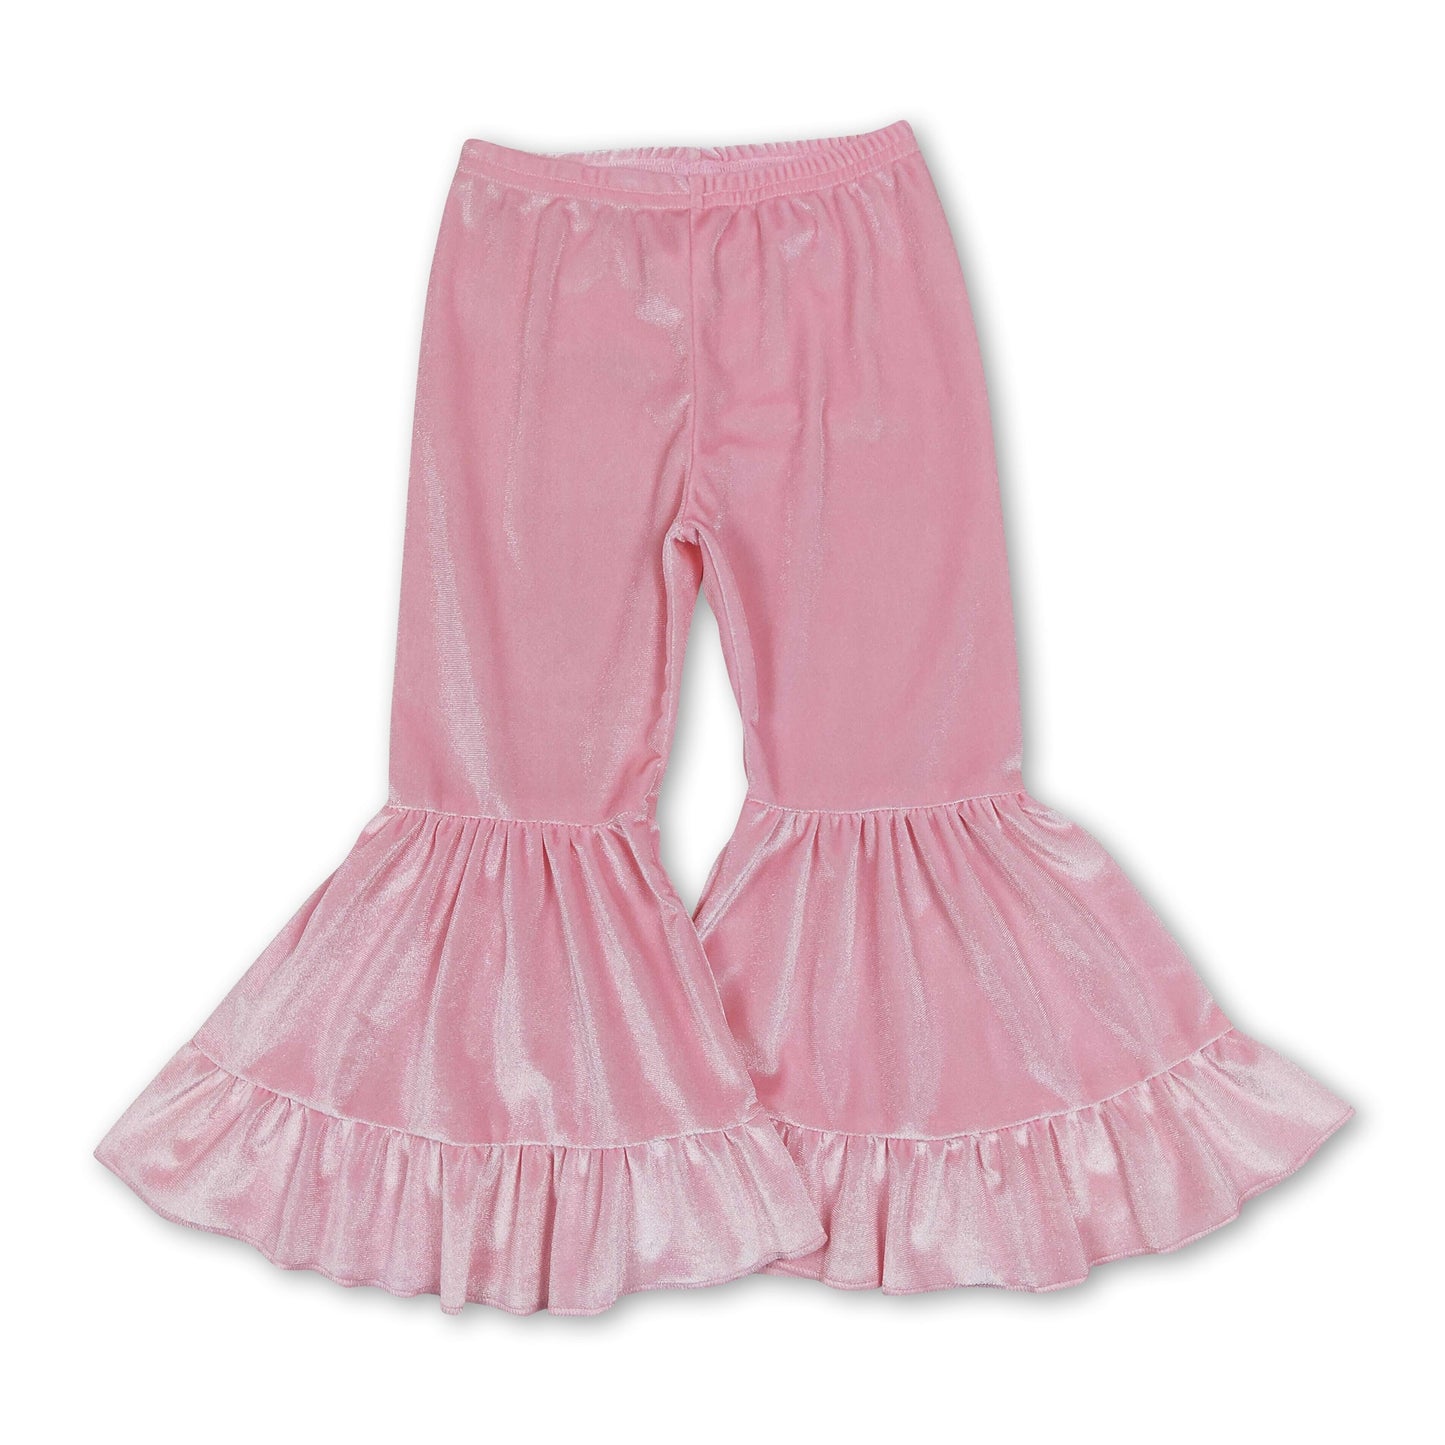 Pink velvet ruffle girls bell bottom pants